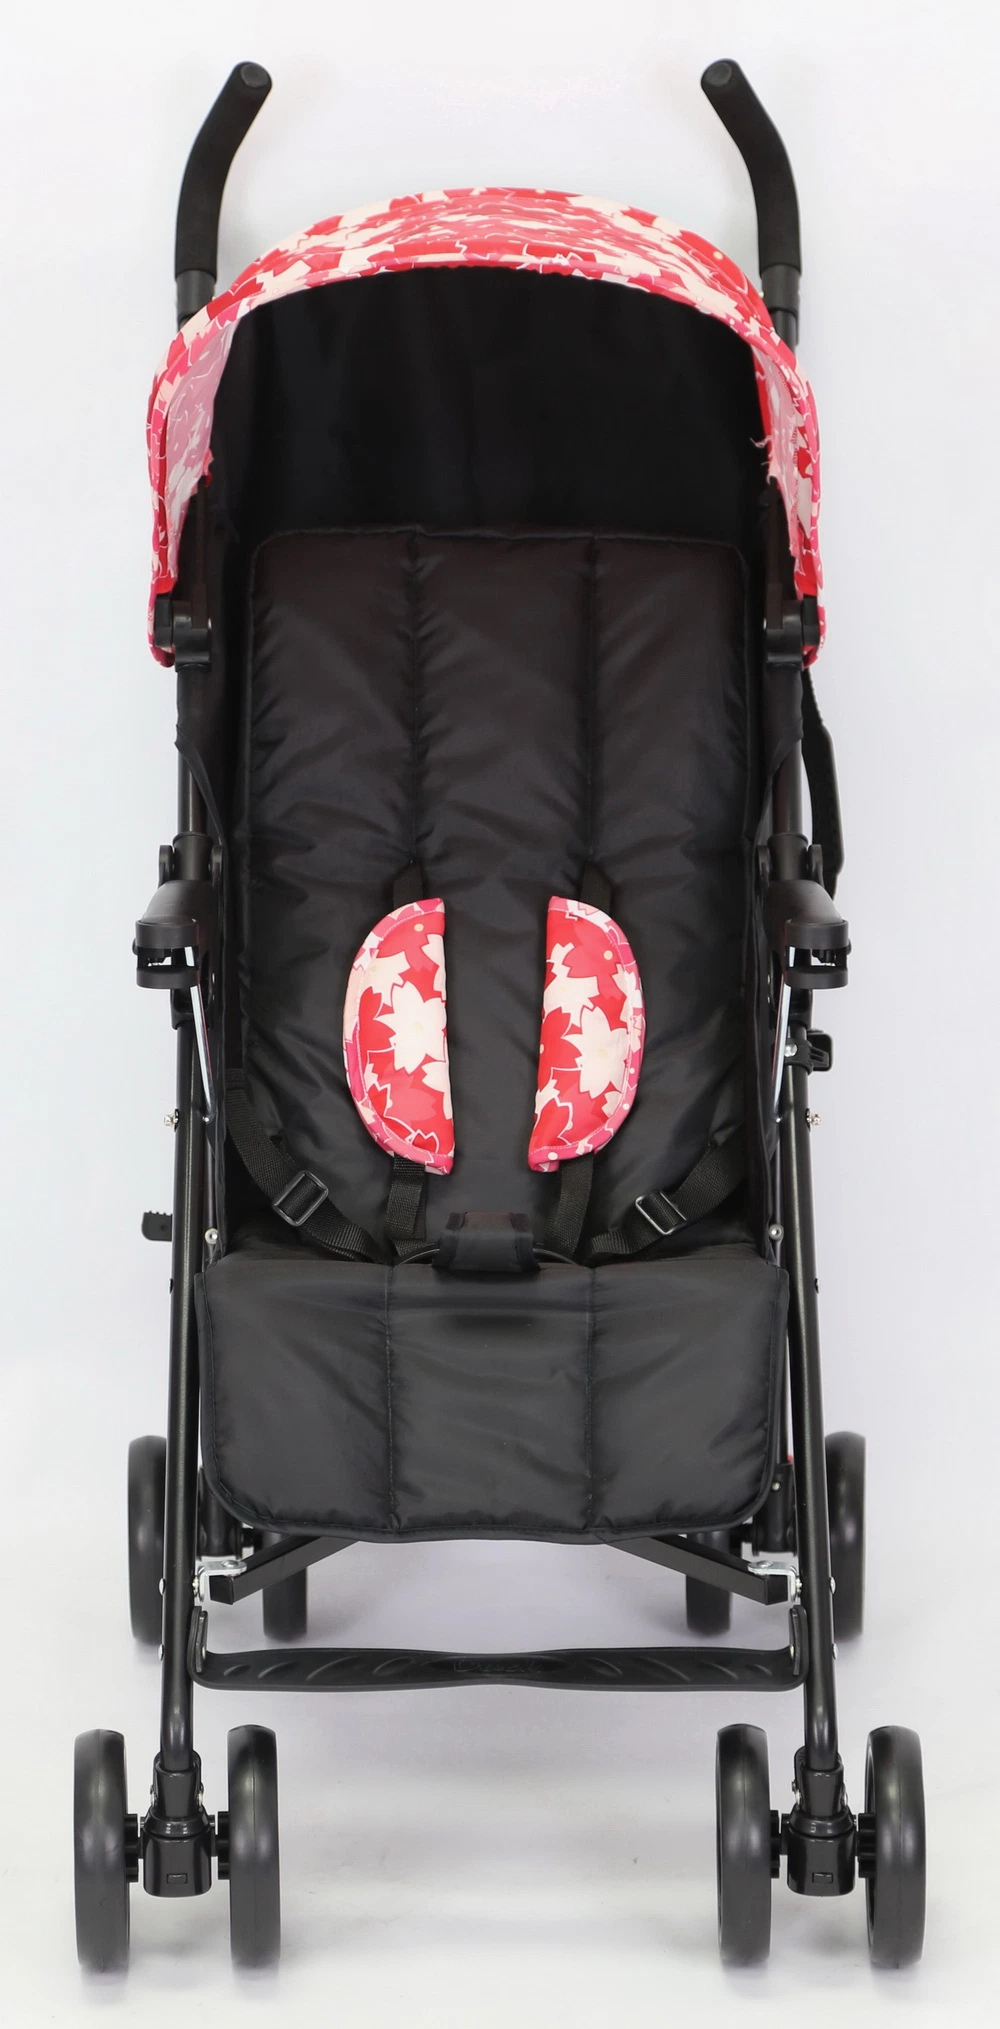 En Standard Baby Buggy Baby Popular Design